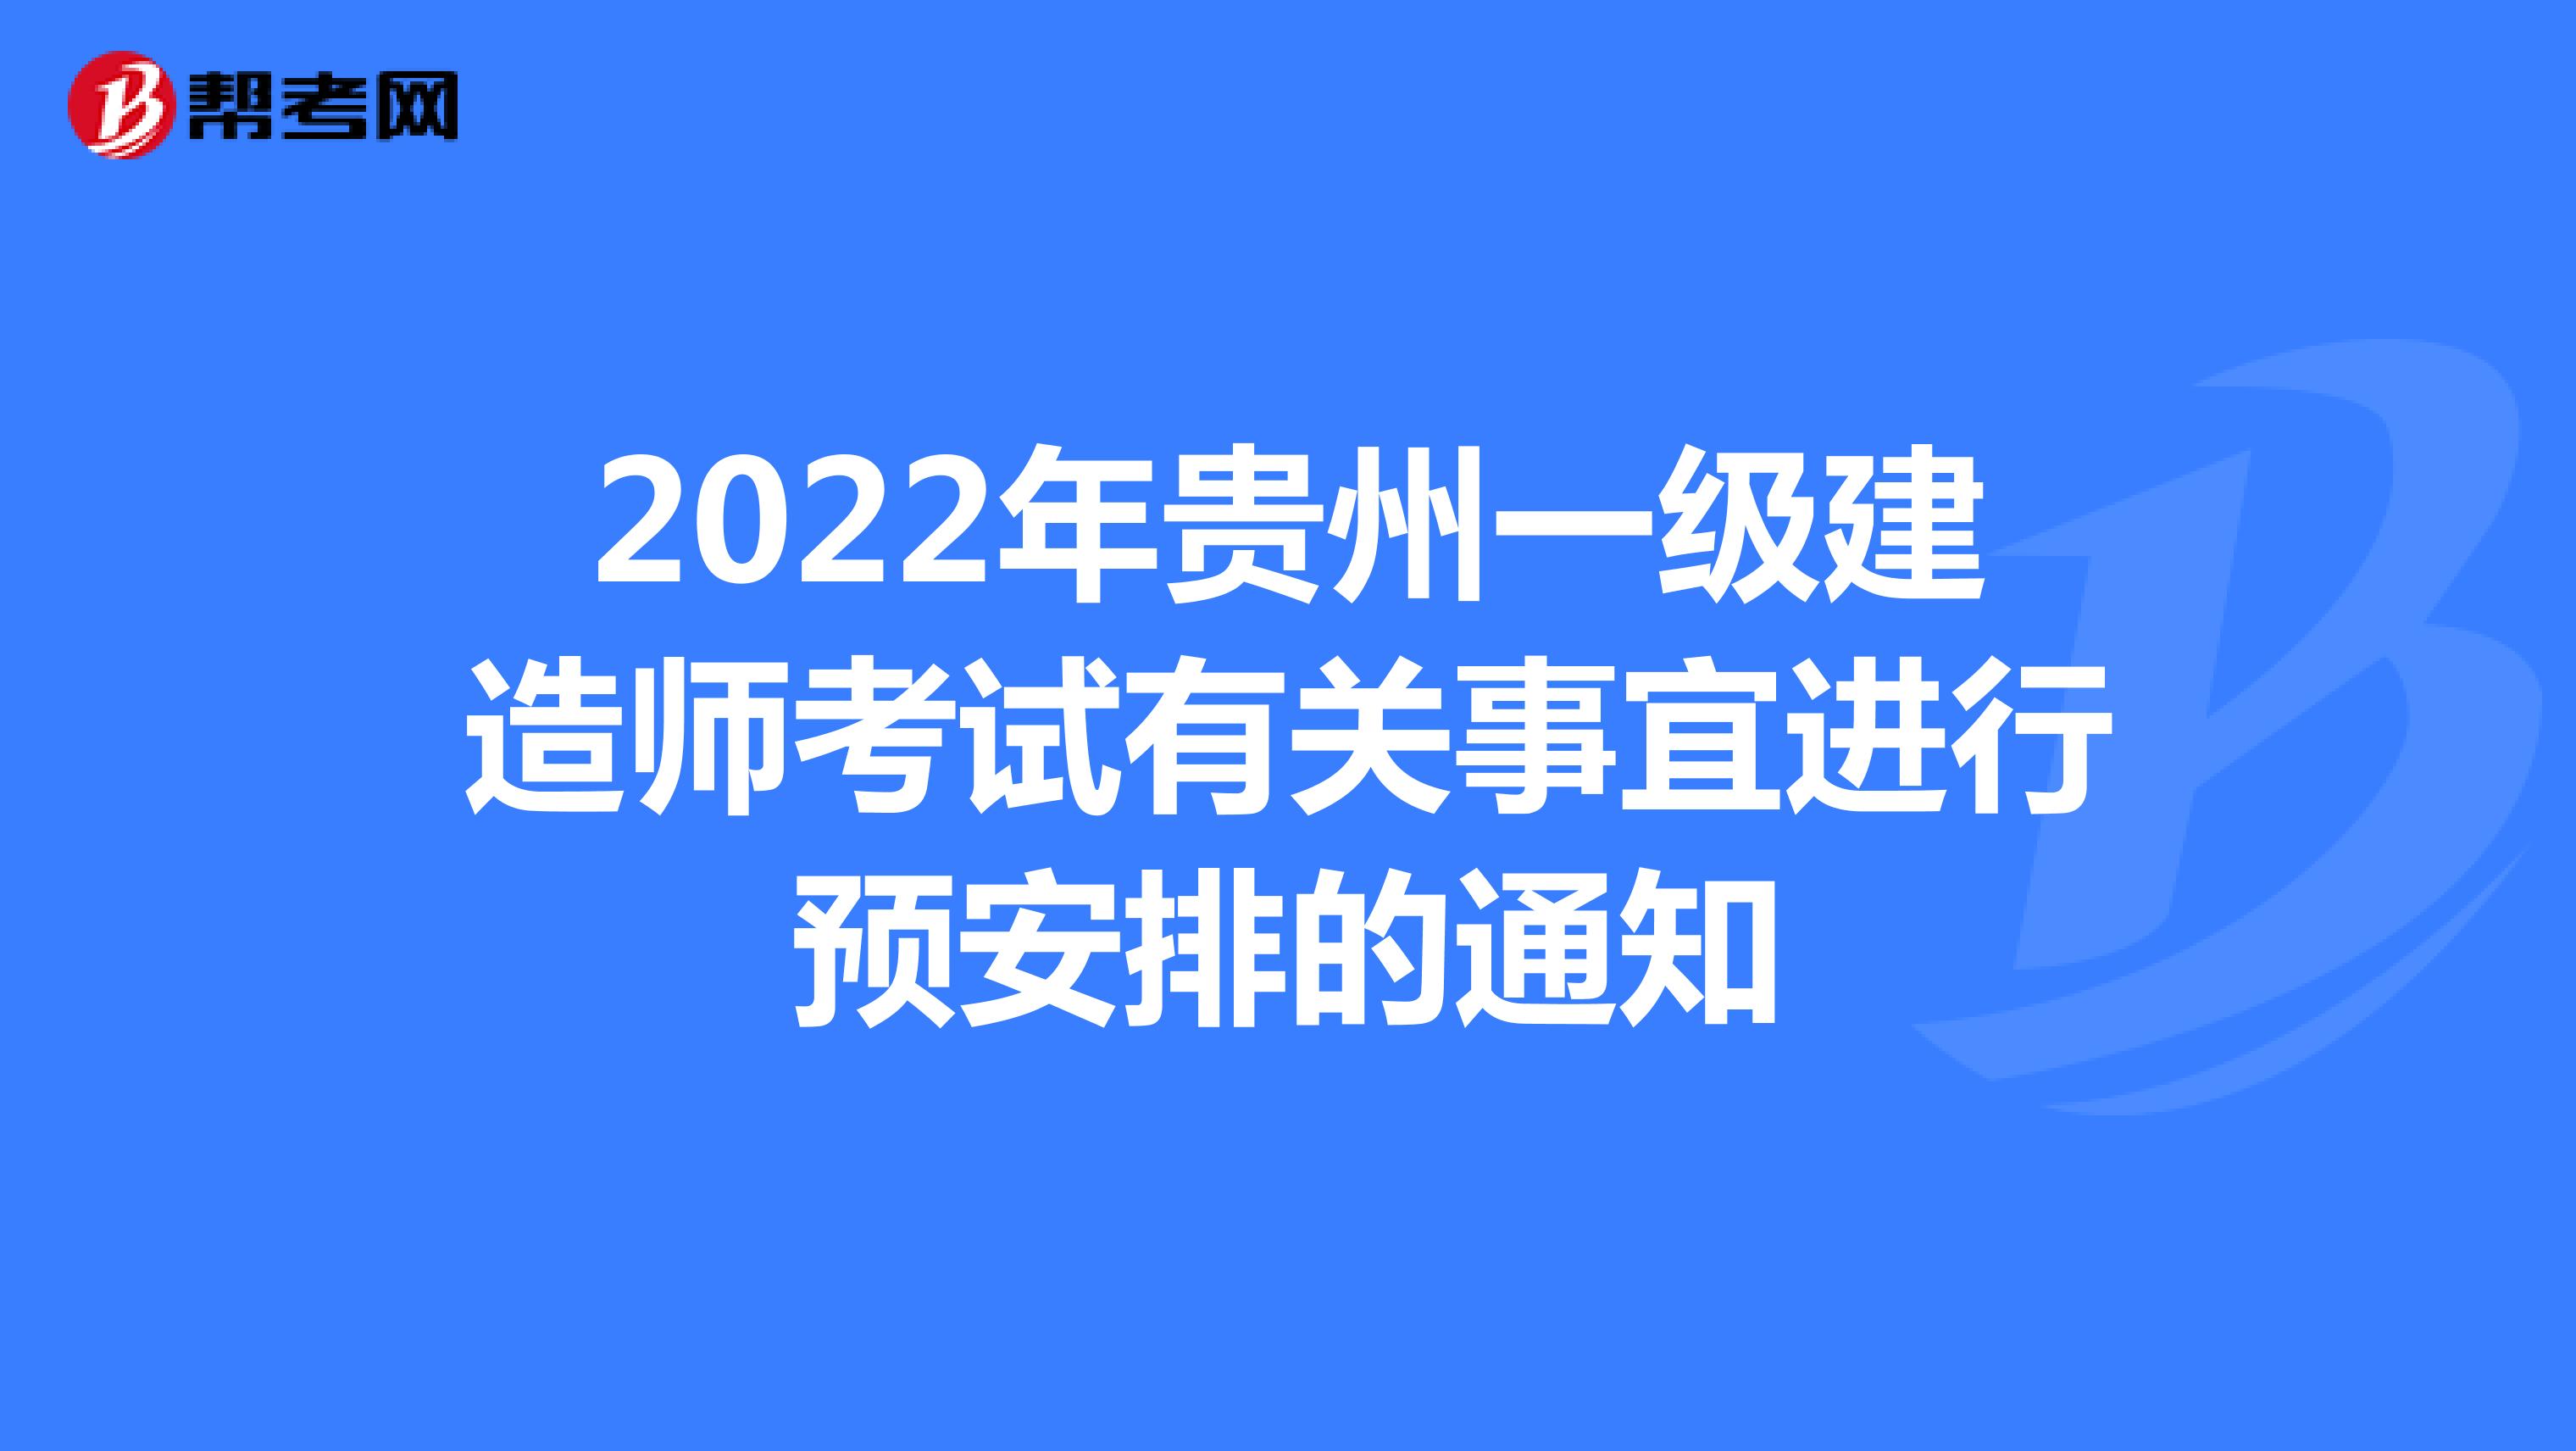 2022年贵州一级建造师考试有关事宜进行预安排的通知